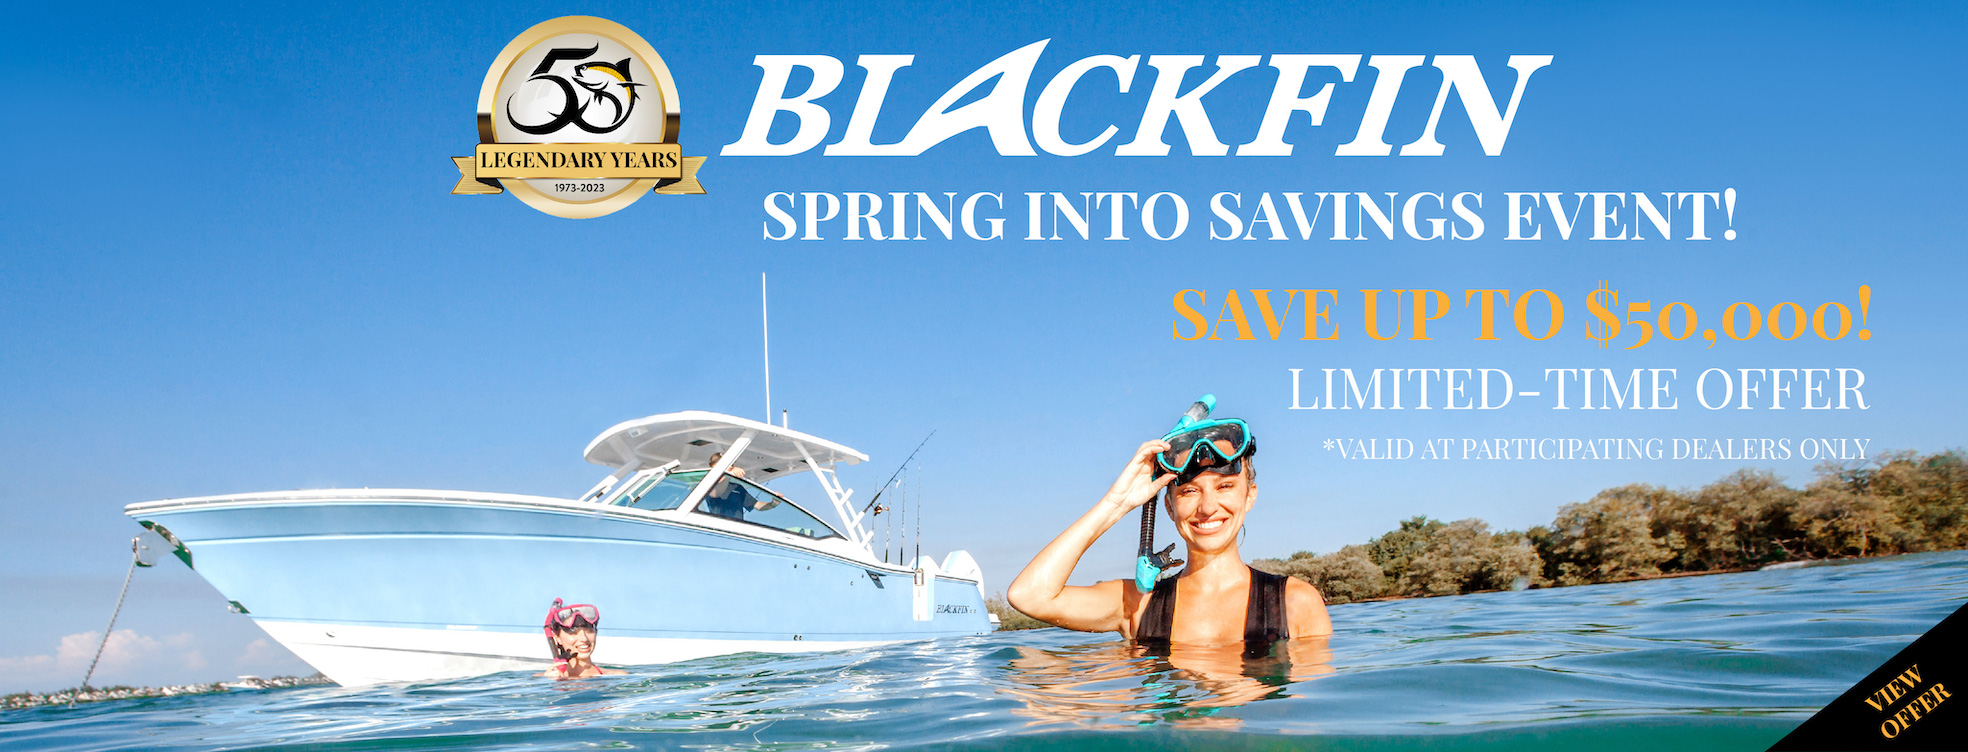 Blackfin Spring into Savings Event